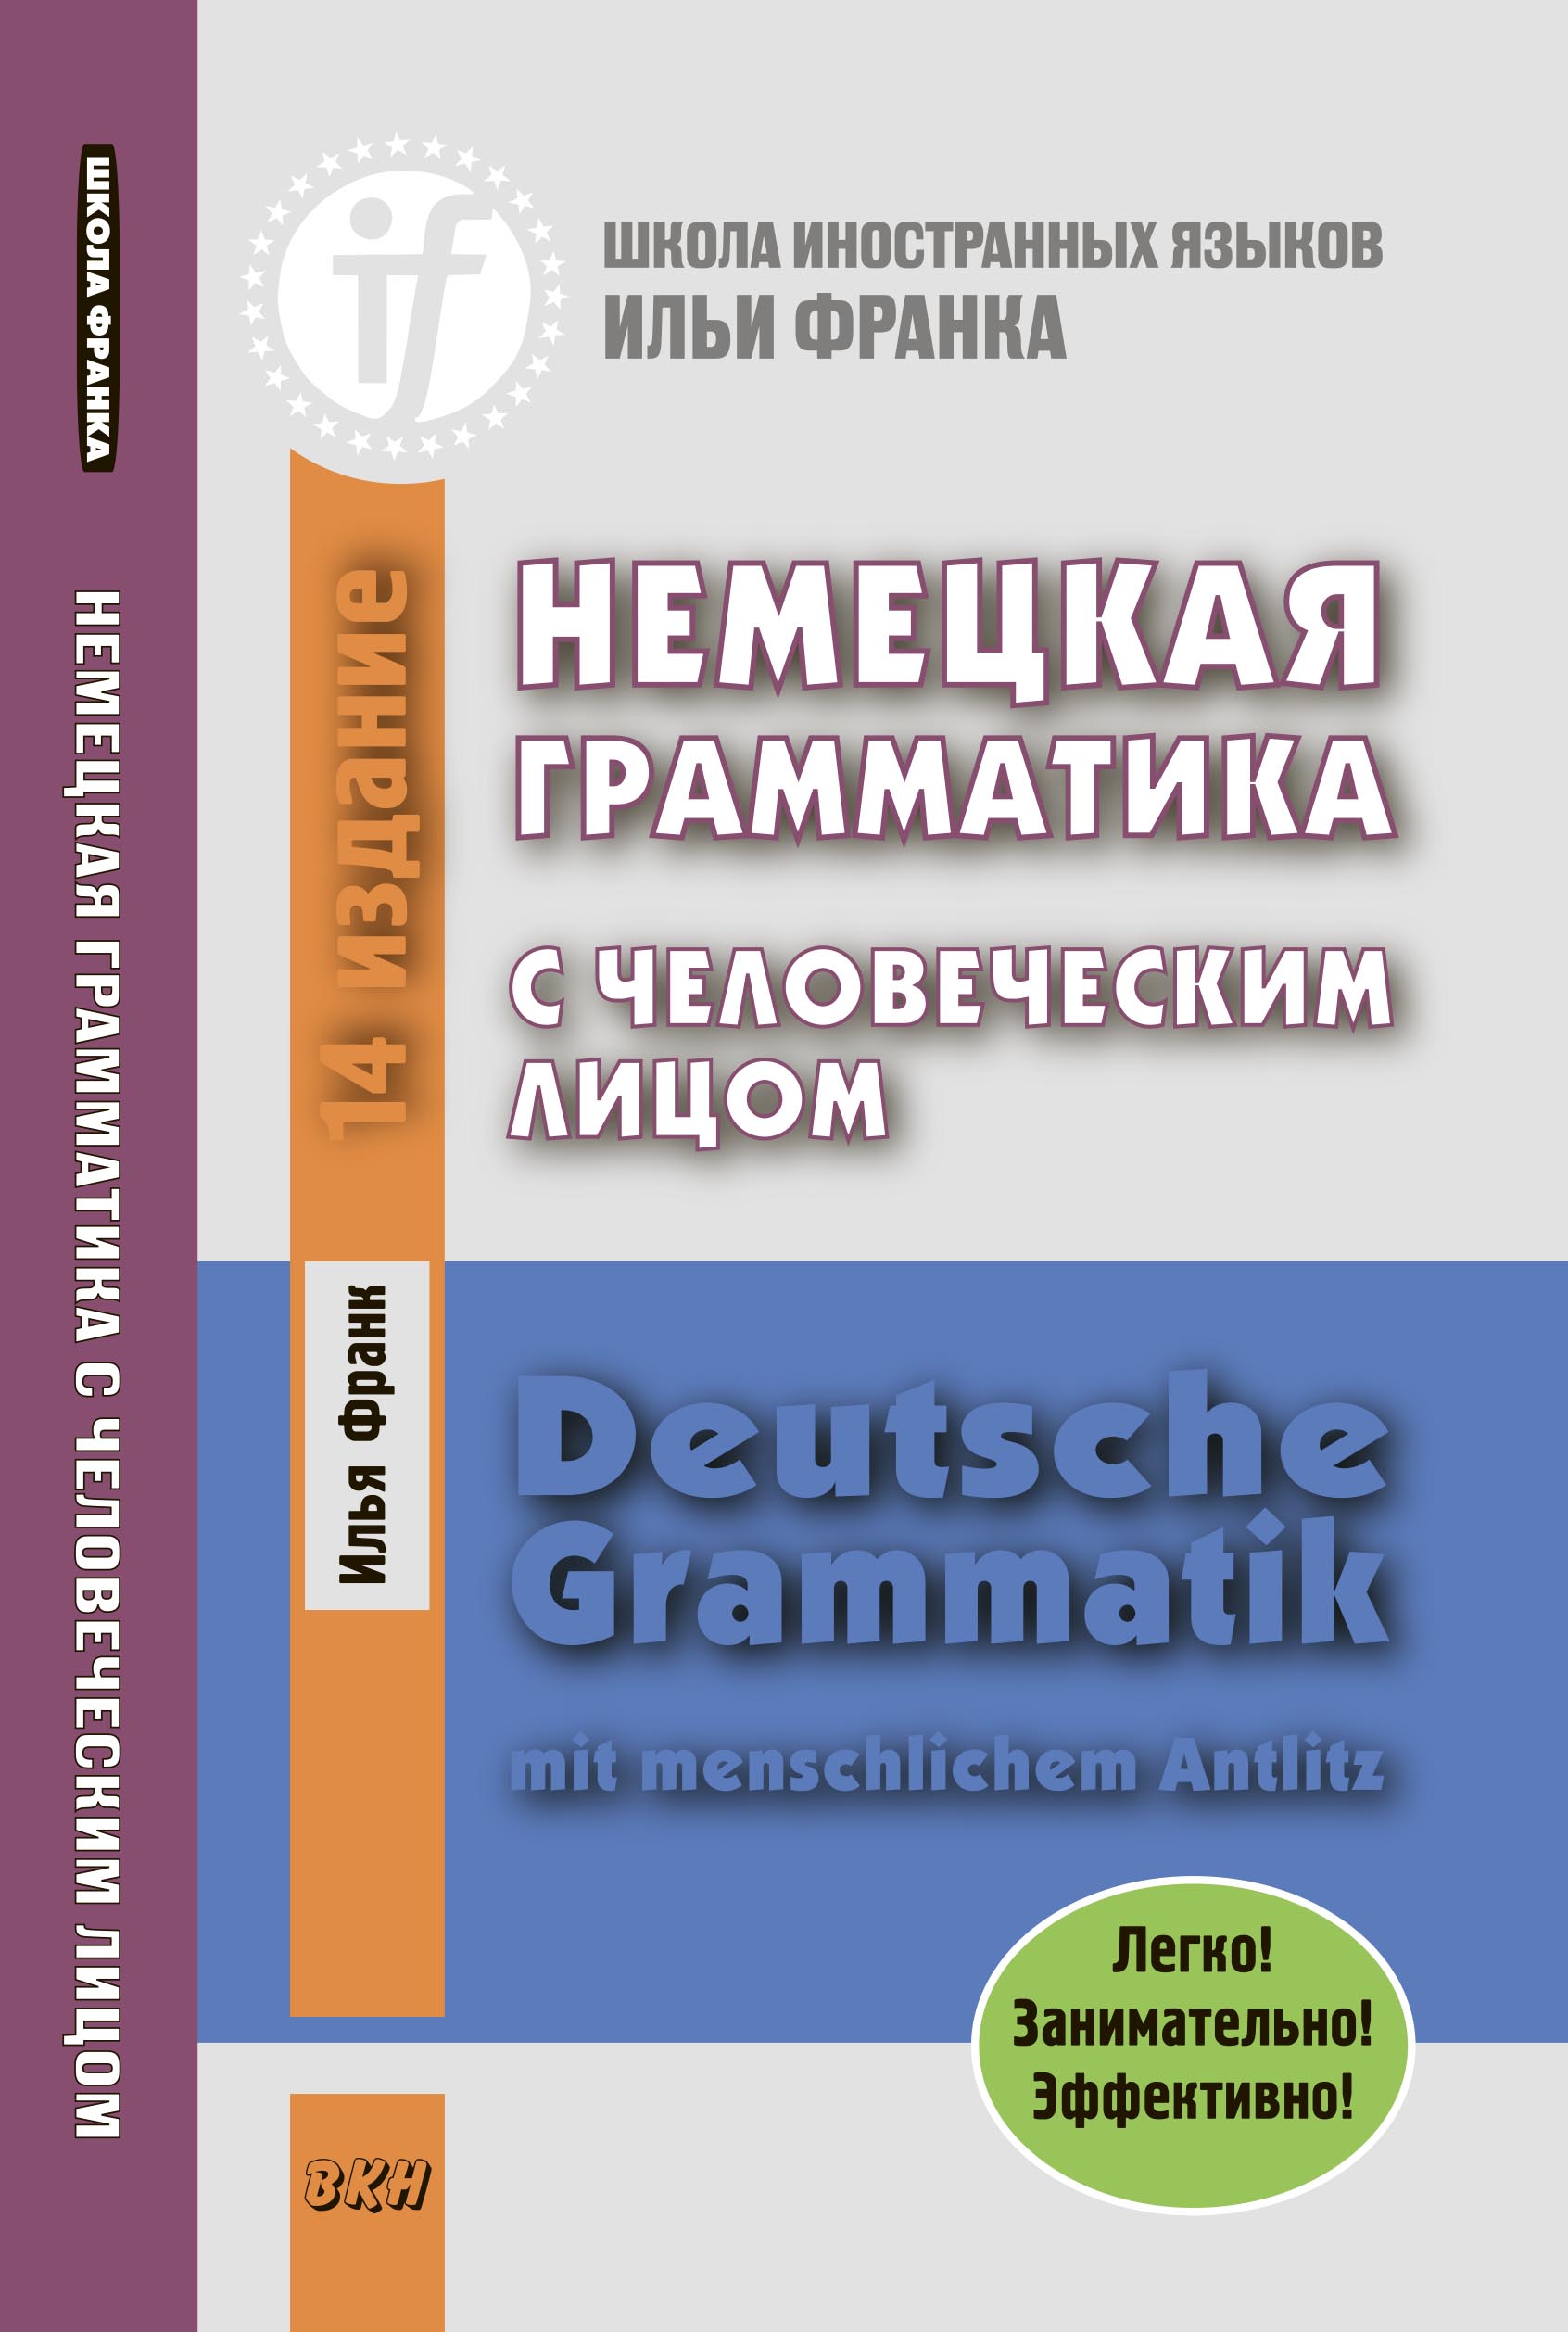 Немецкая грамматика с человеческим лицом \/ Deutsche Grammatik mit menschlichem Antlitz